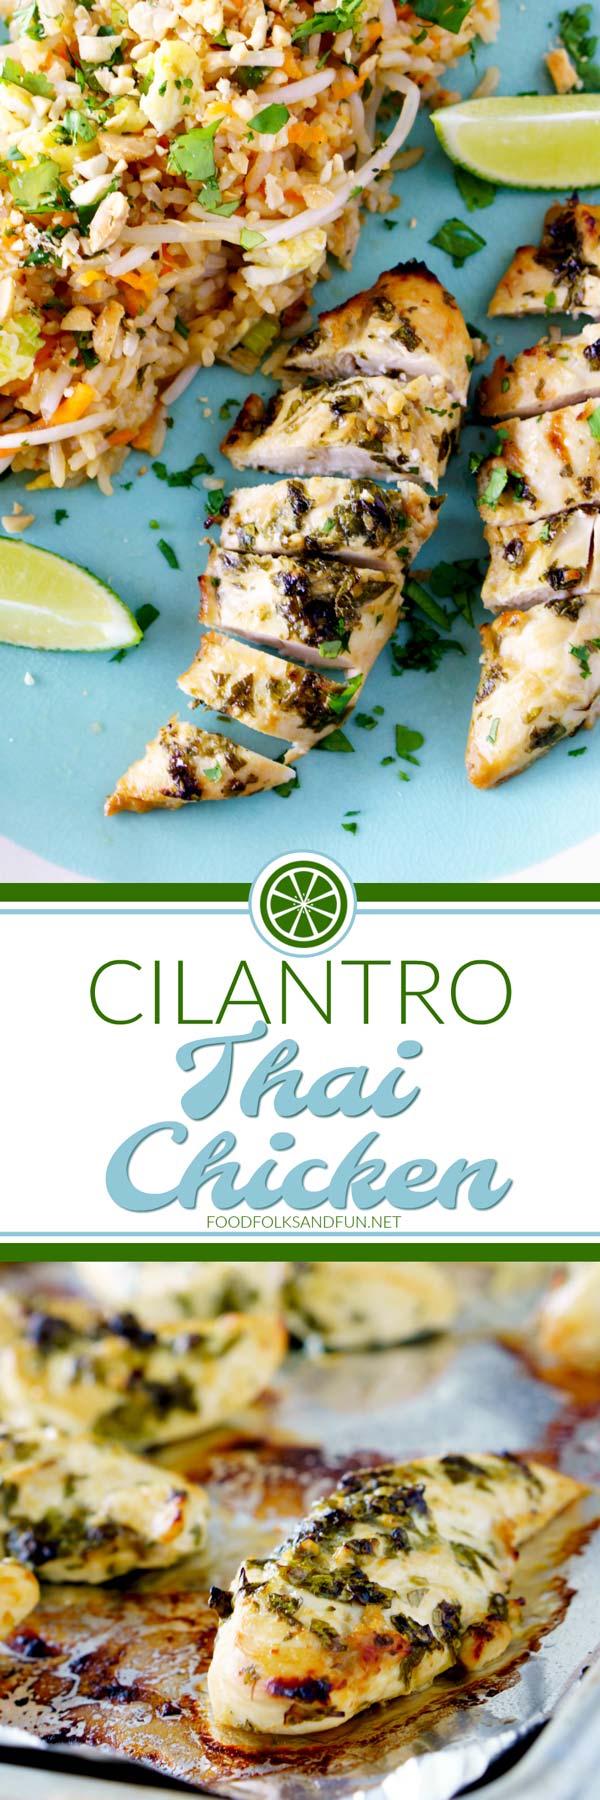 Delicious Cilantro Thai Chicken Recipe that's so easy to make!